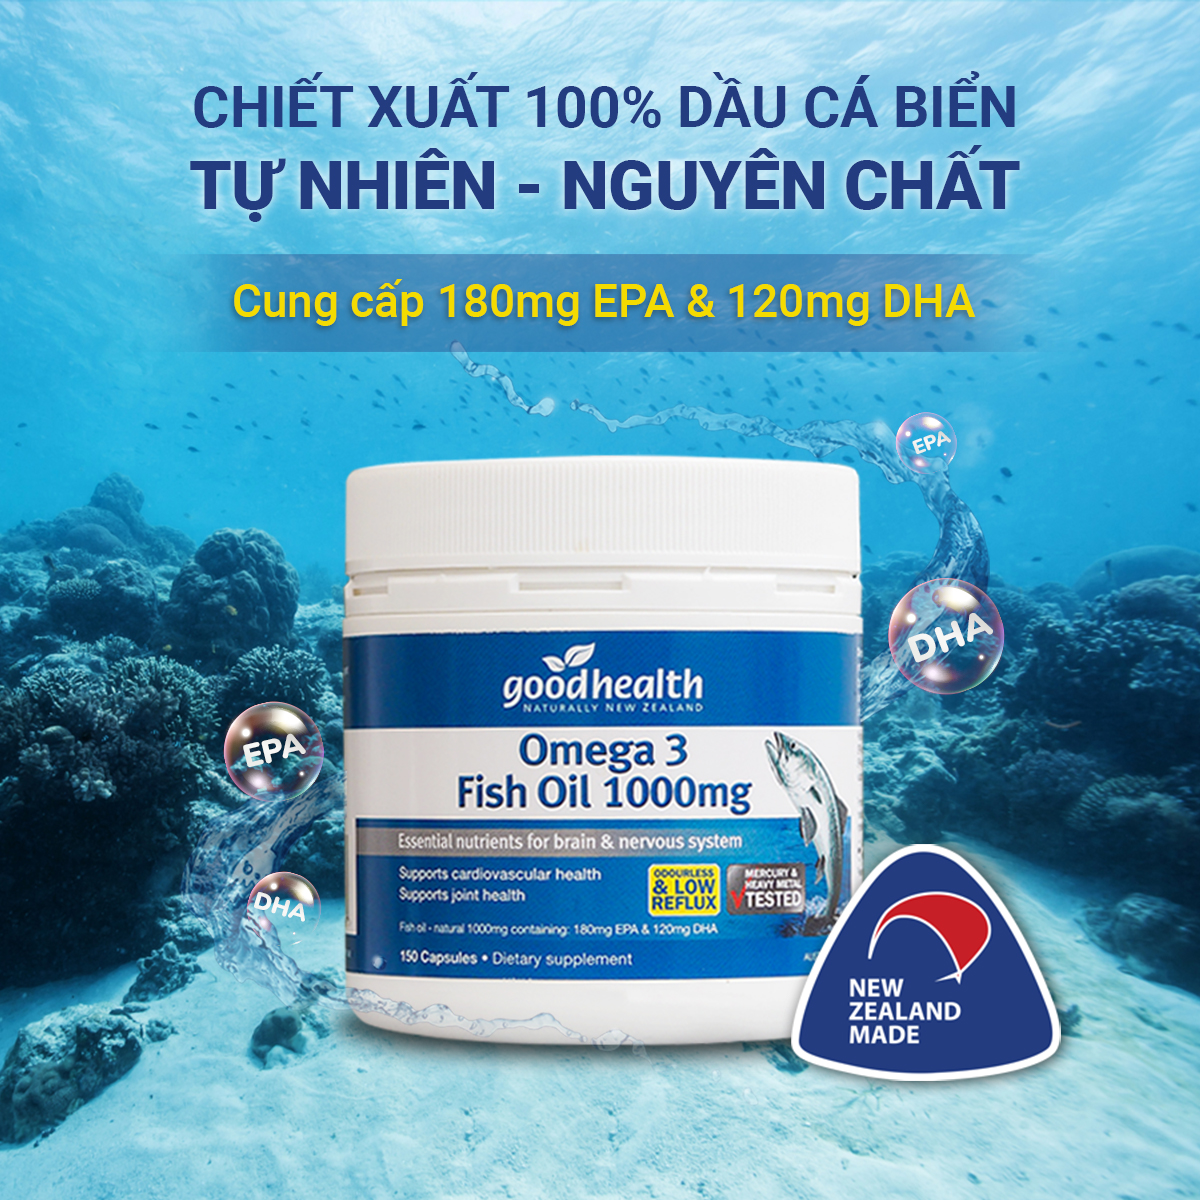 Combo 2 Hộp Dầu Cá Goodhealth Omega 3 Fish Oil 1000mg 150 Viên - Bổ Não - Tăng Trí Nhớ - Mắt Tinh - Chính Hãng Từ New Zealand